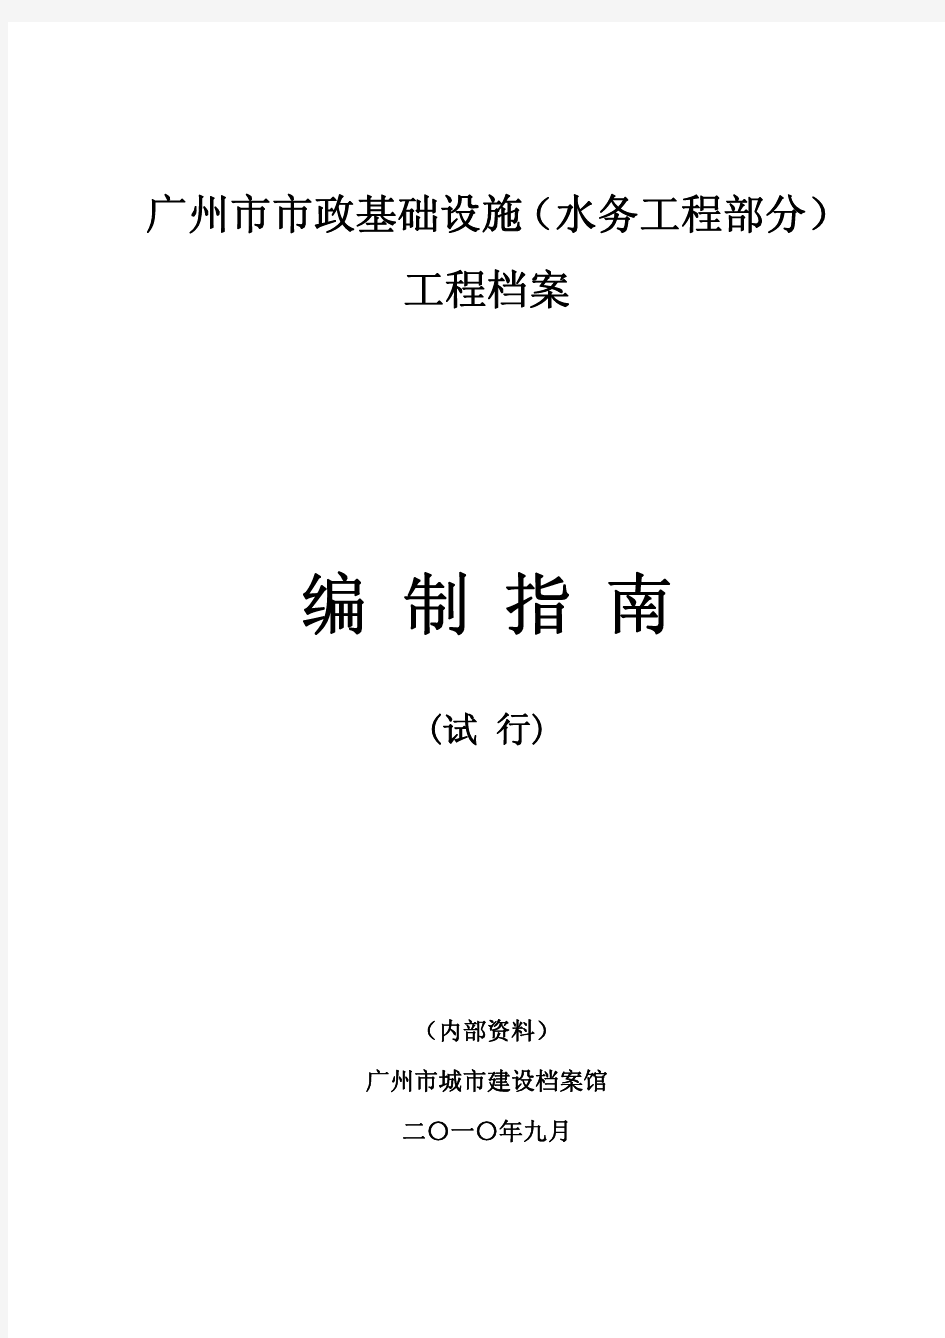 广州市市政基础设施水务档案编制指南1